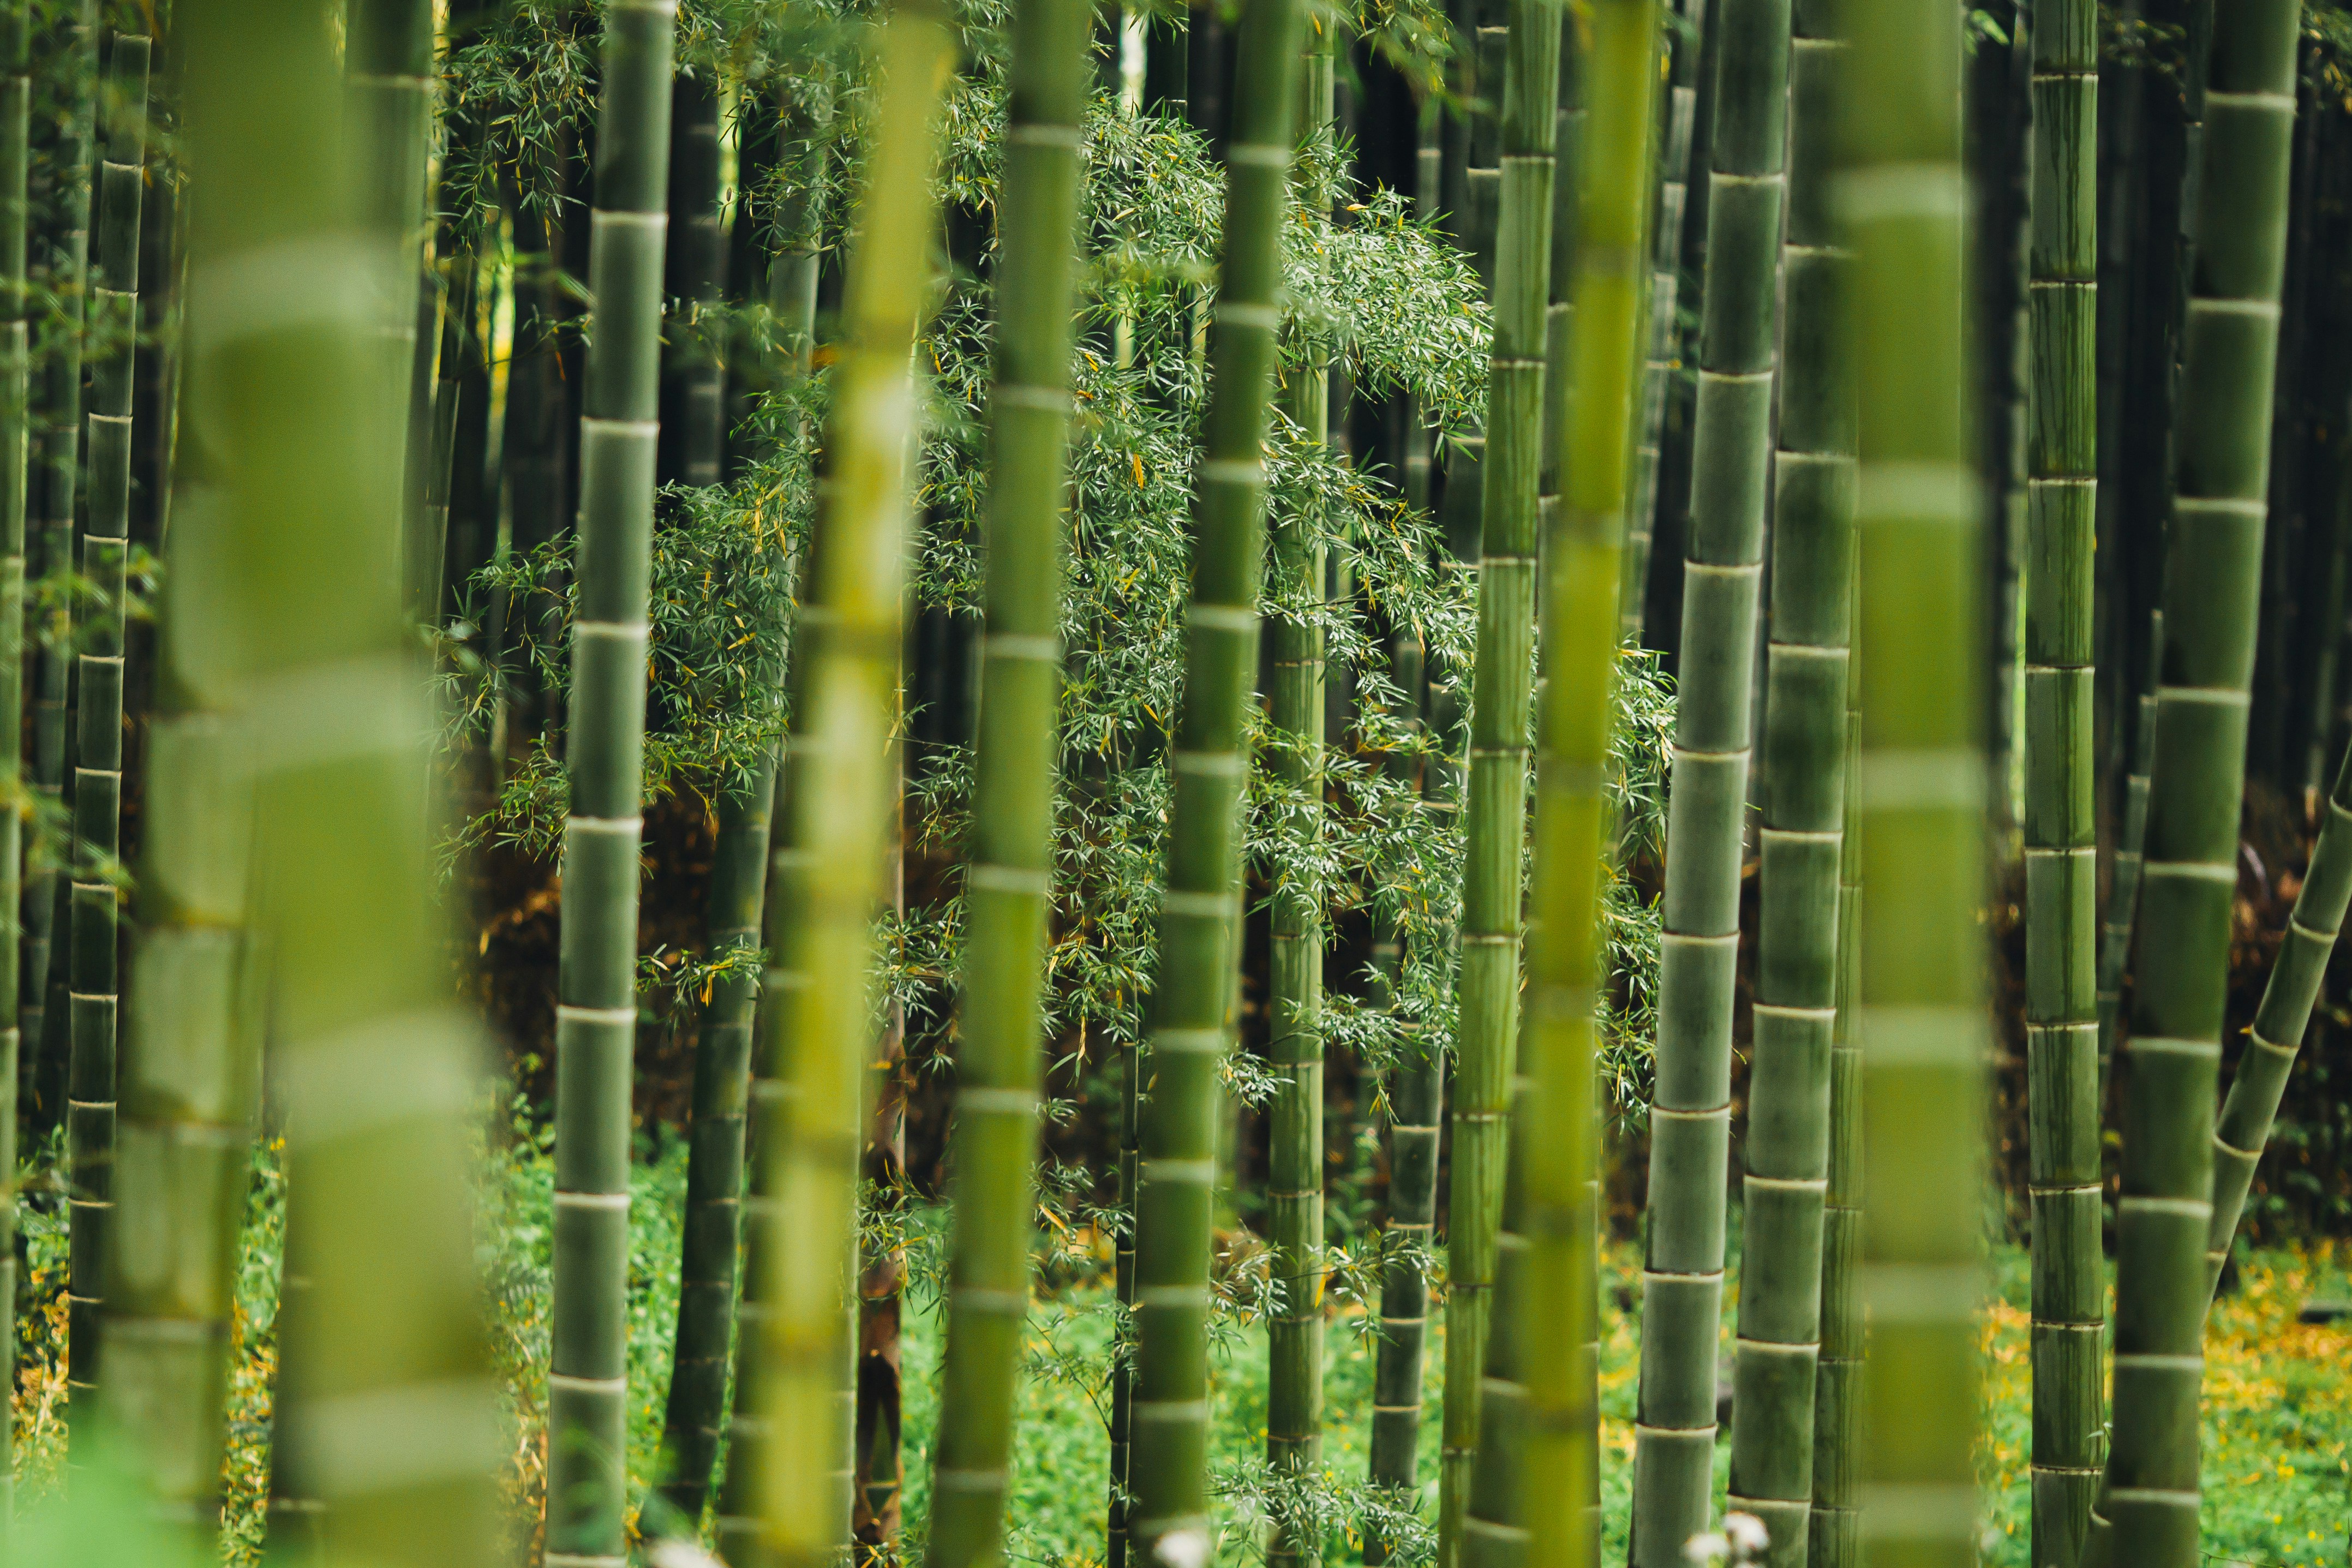  bambus træer